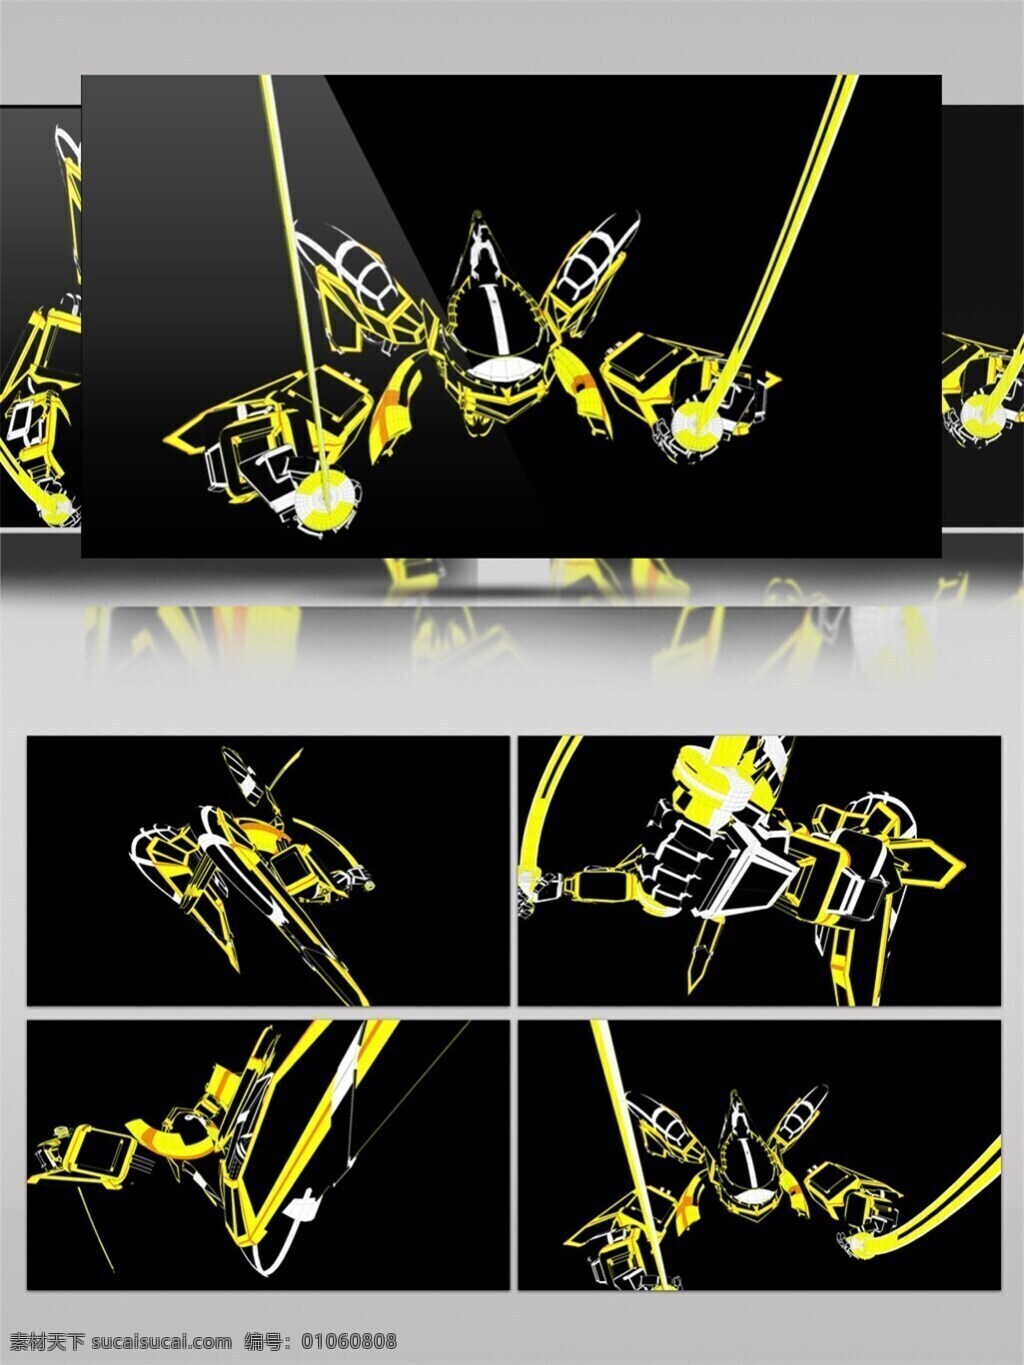 大黄蜂 机器人炫光 特效视频素材 绚丽光黄 梦幻 黄光 动态 视频 生活 实用 背景